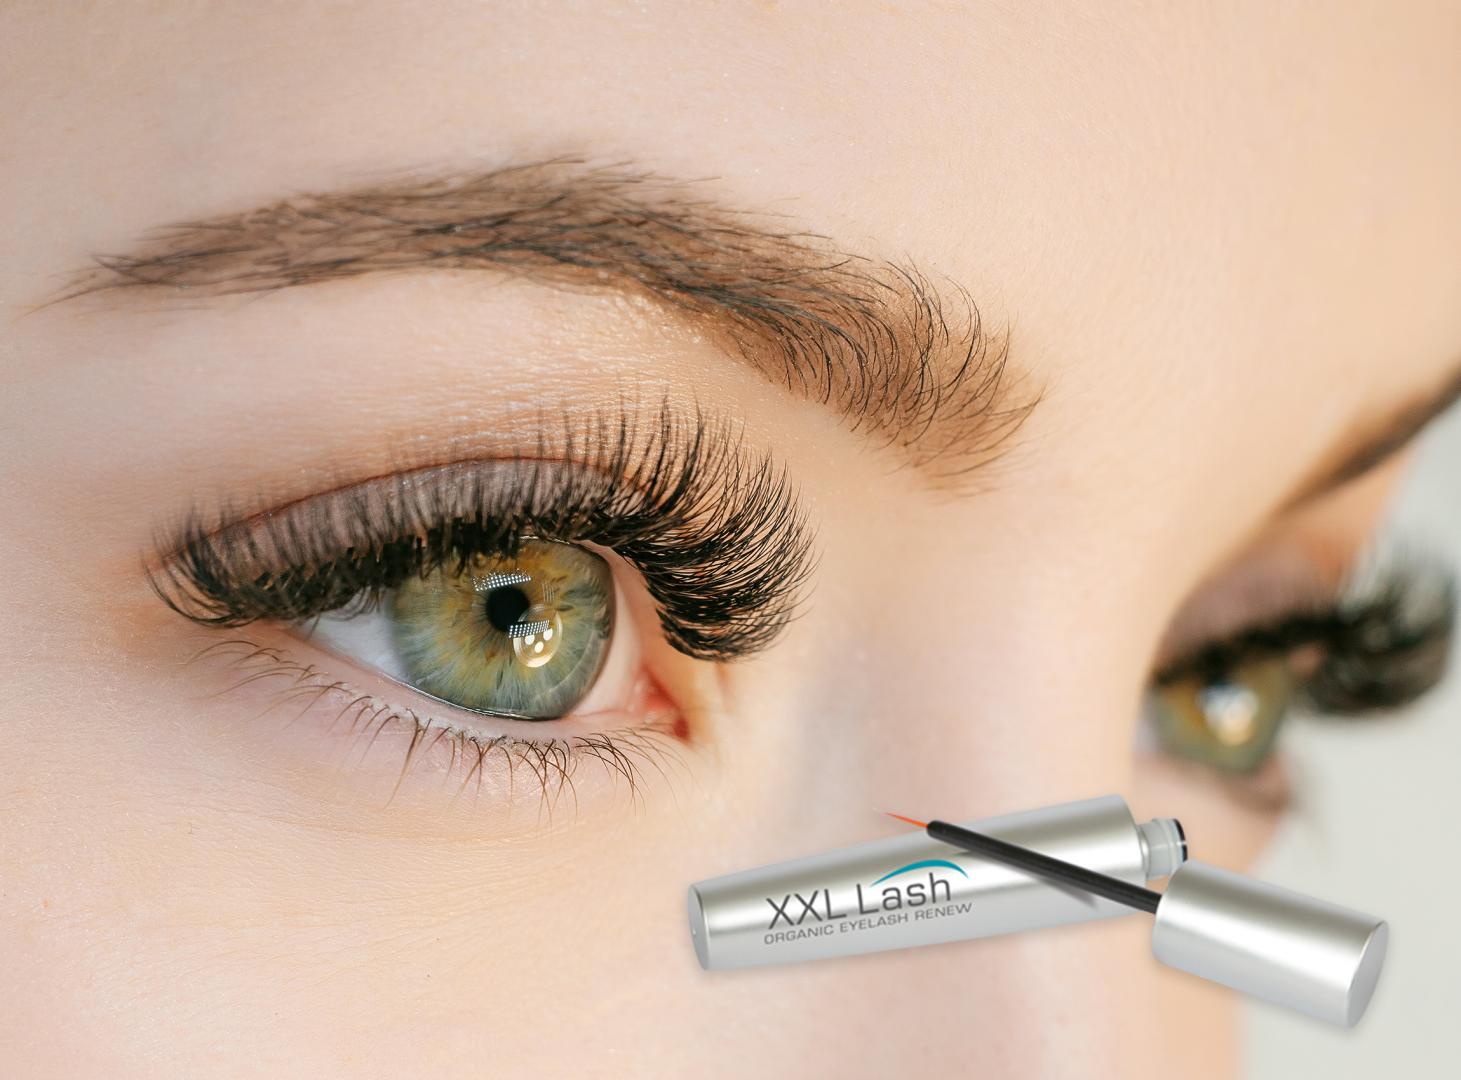 XXL Organic Eyelash Renew wirkt auf das Wachstum der Wimpern. Eine schöne Hilfe, um die Augen gepflegt zur Geltung zu bringen.